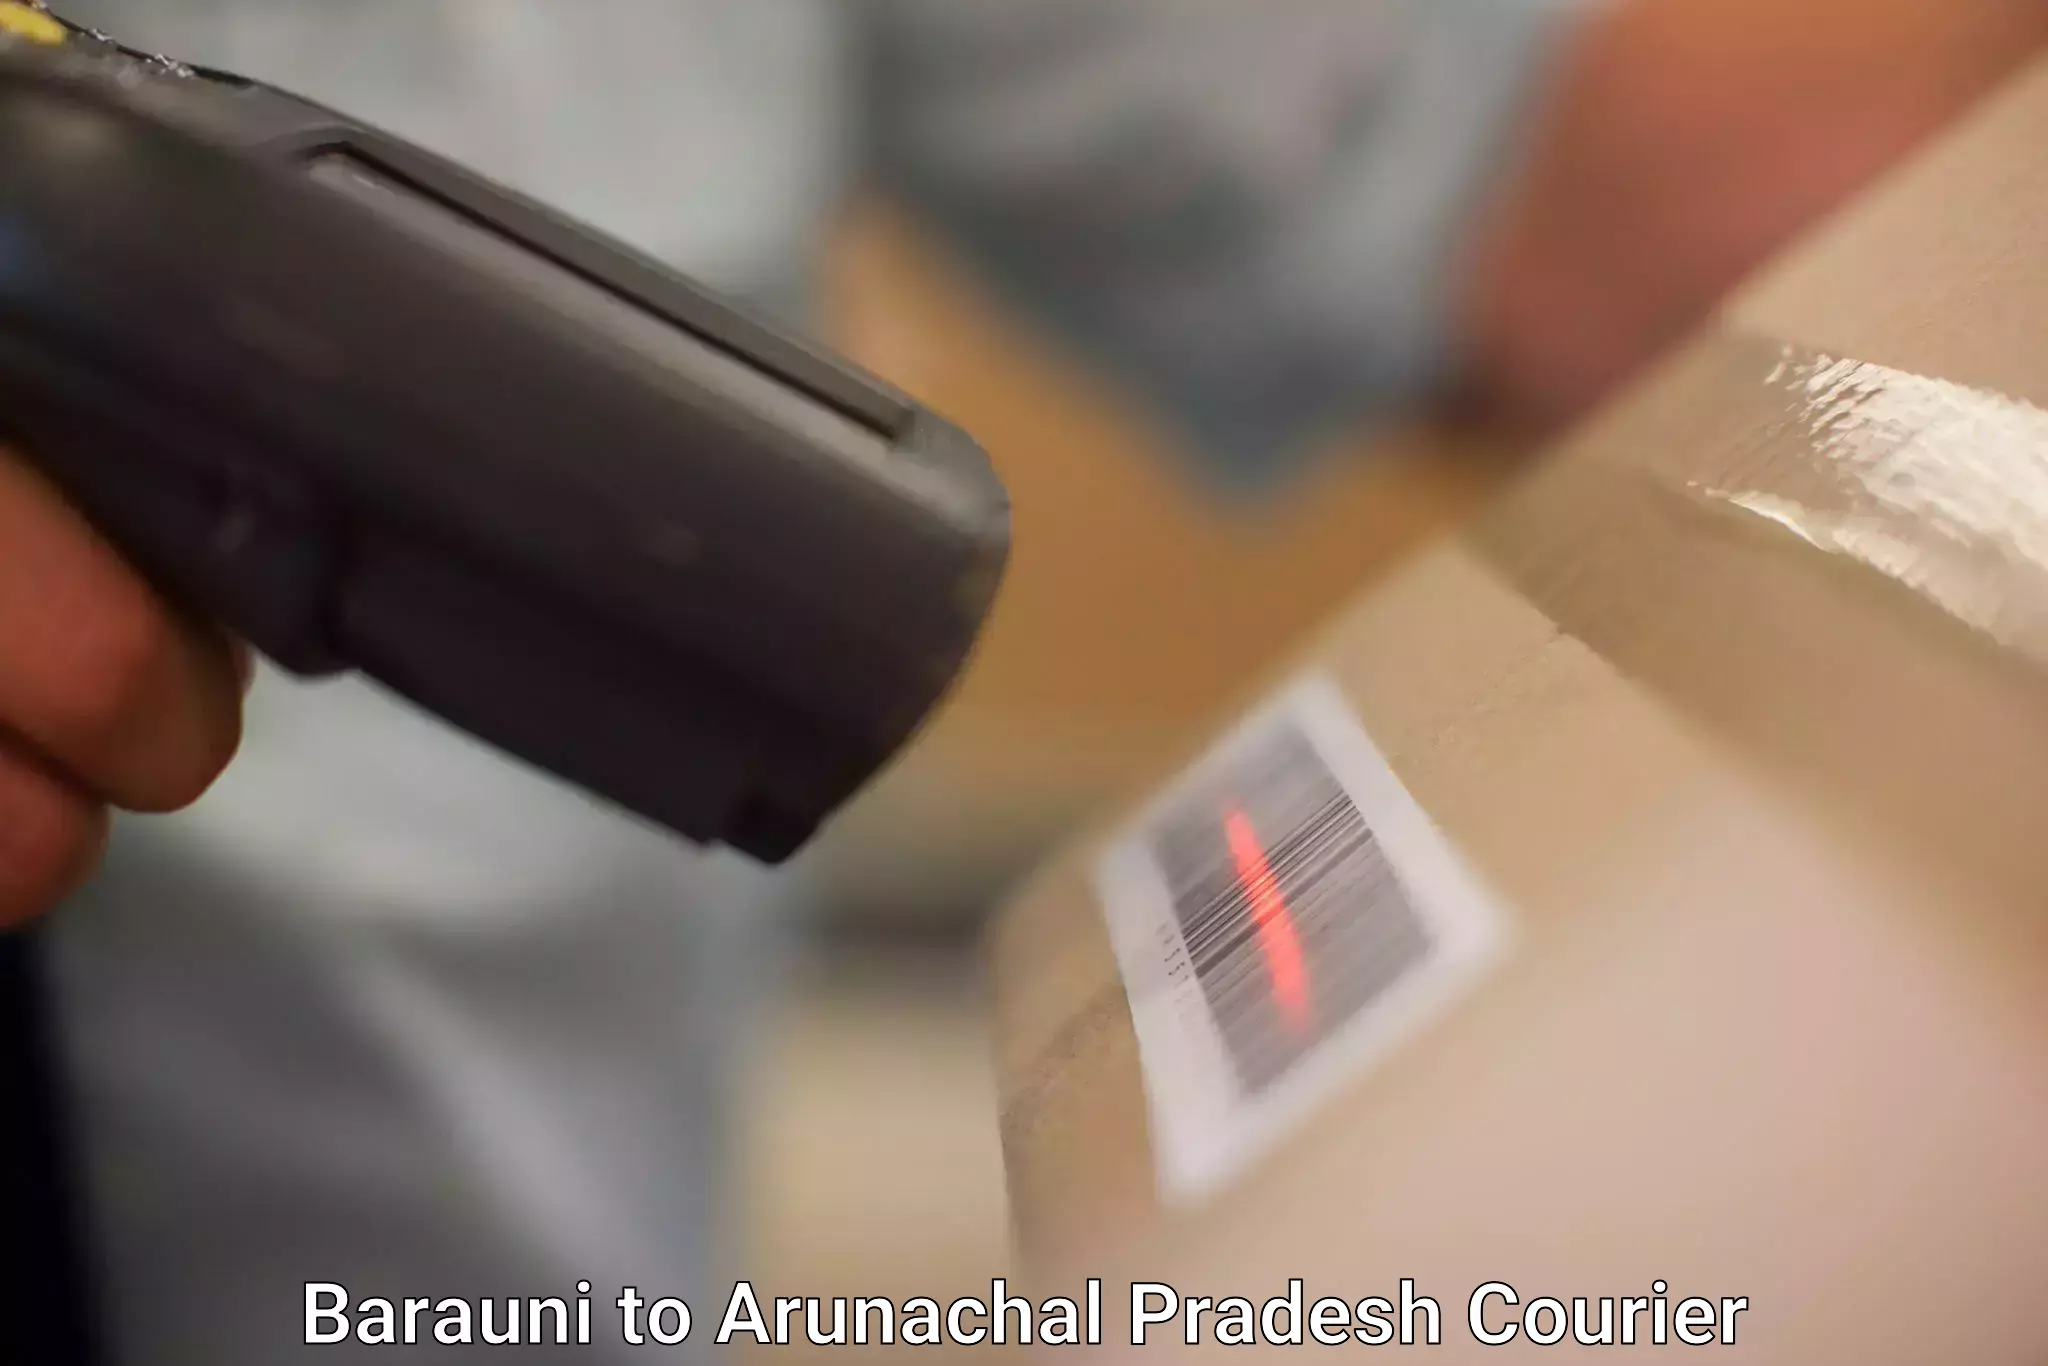 Next-generation courier services Barauni to Arunachal Pradesh